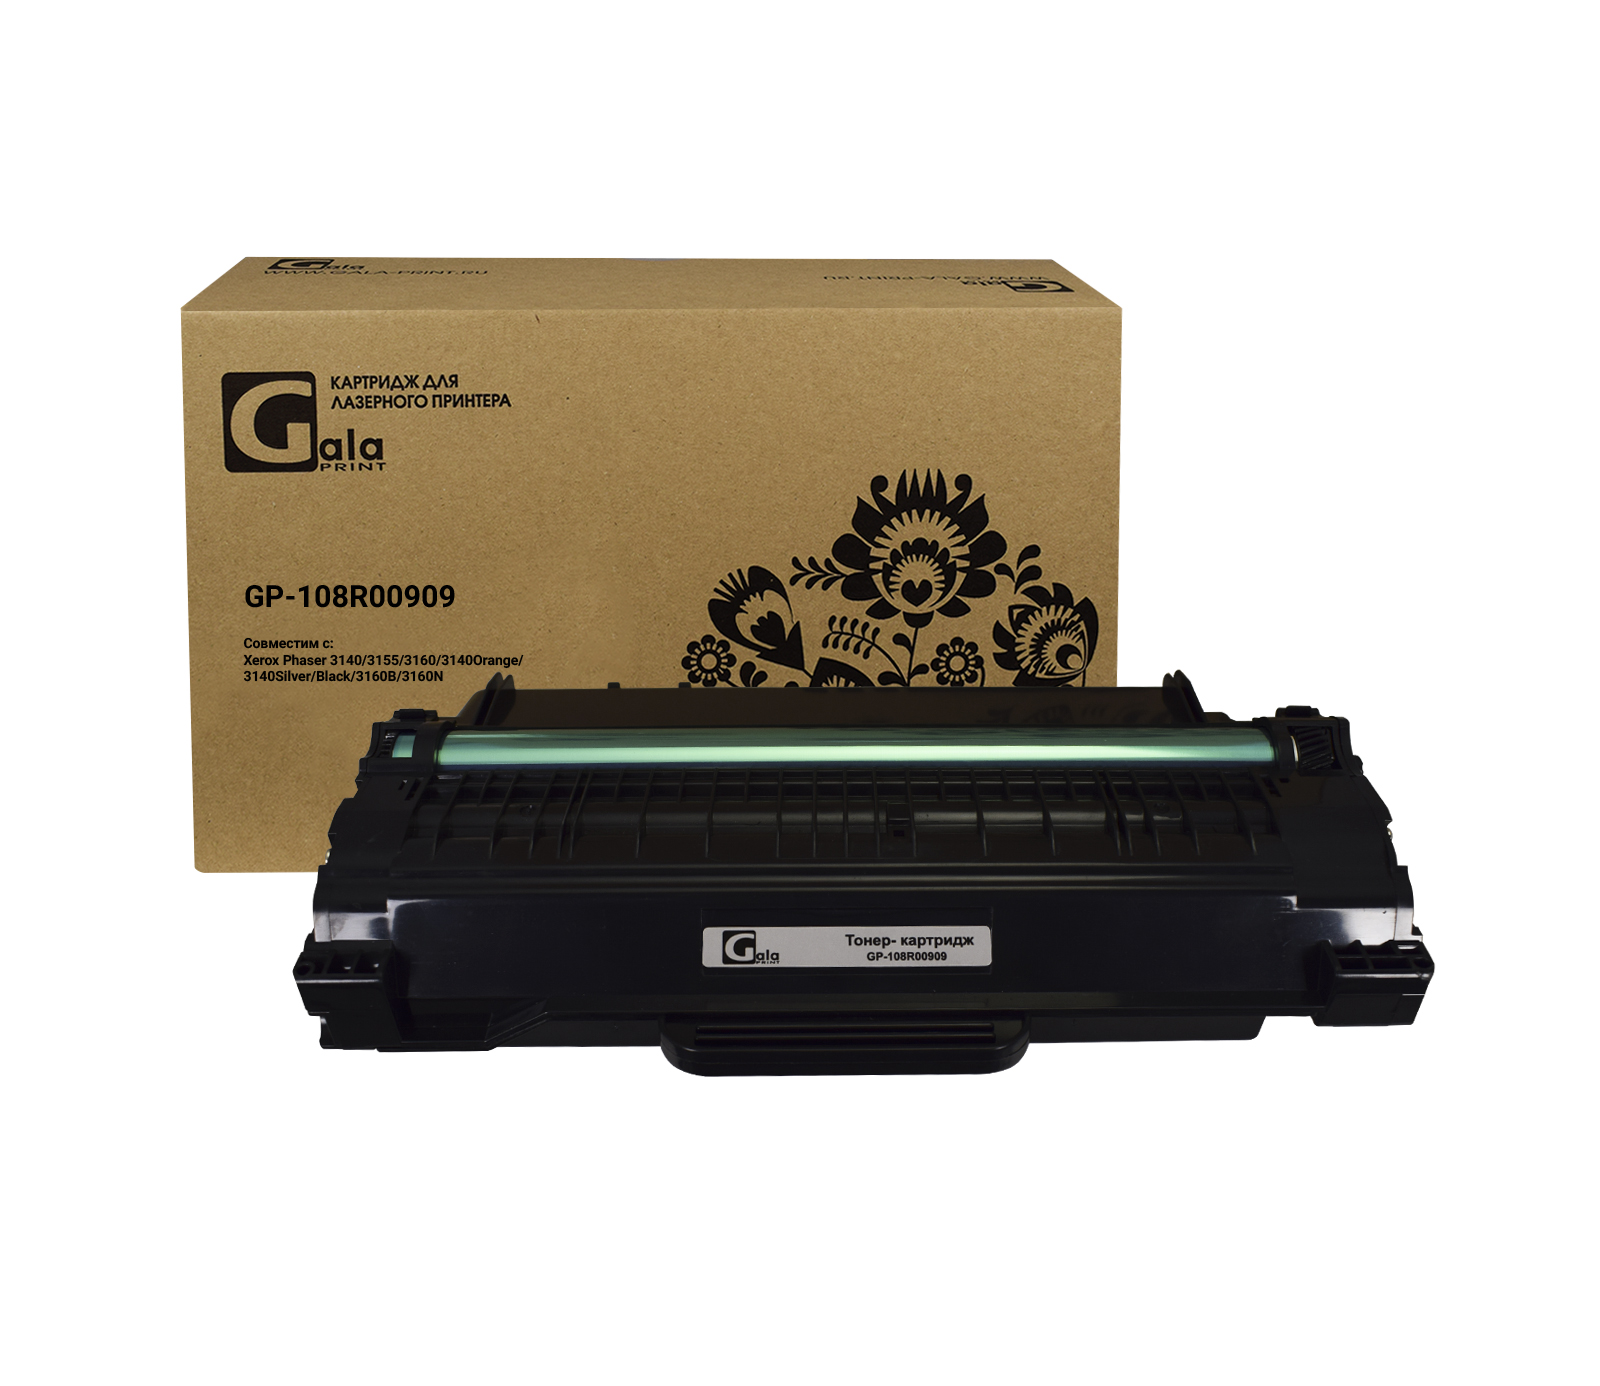 Картридж GP-108R00909 для принтеров Rank Xerox Phaser 3140/3155/3160B/3160N 2500 копий GalaPrint